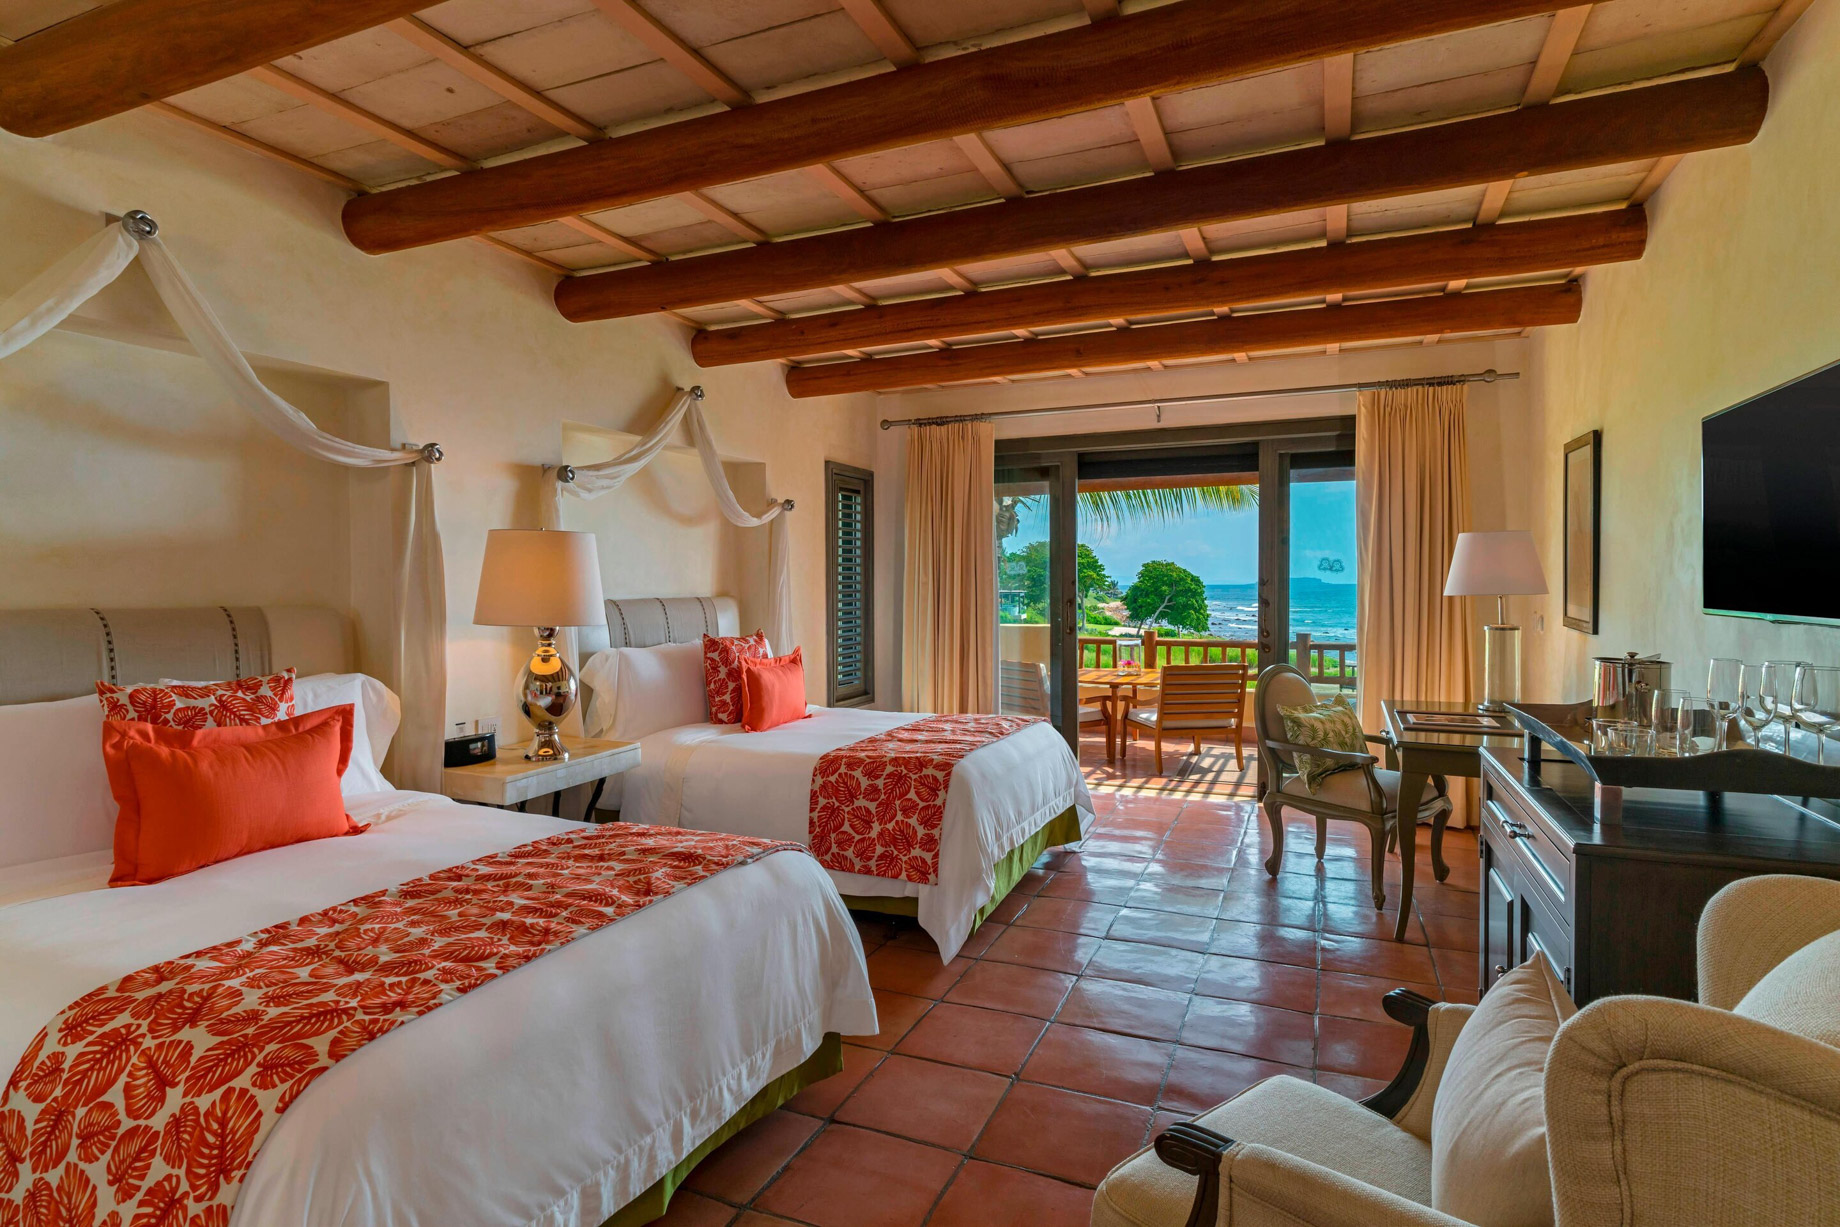 The St. Regis Punta Mita Resort – Nayarit, Mexico – Deluxe Queen Guest room